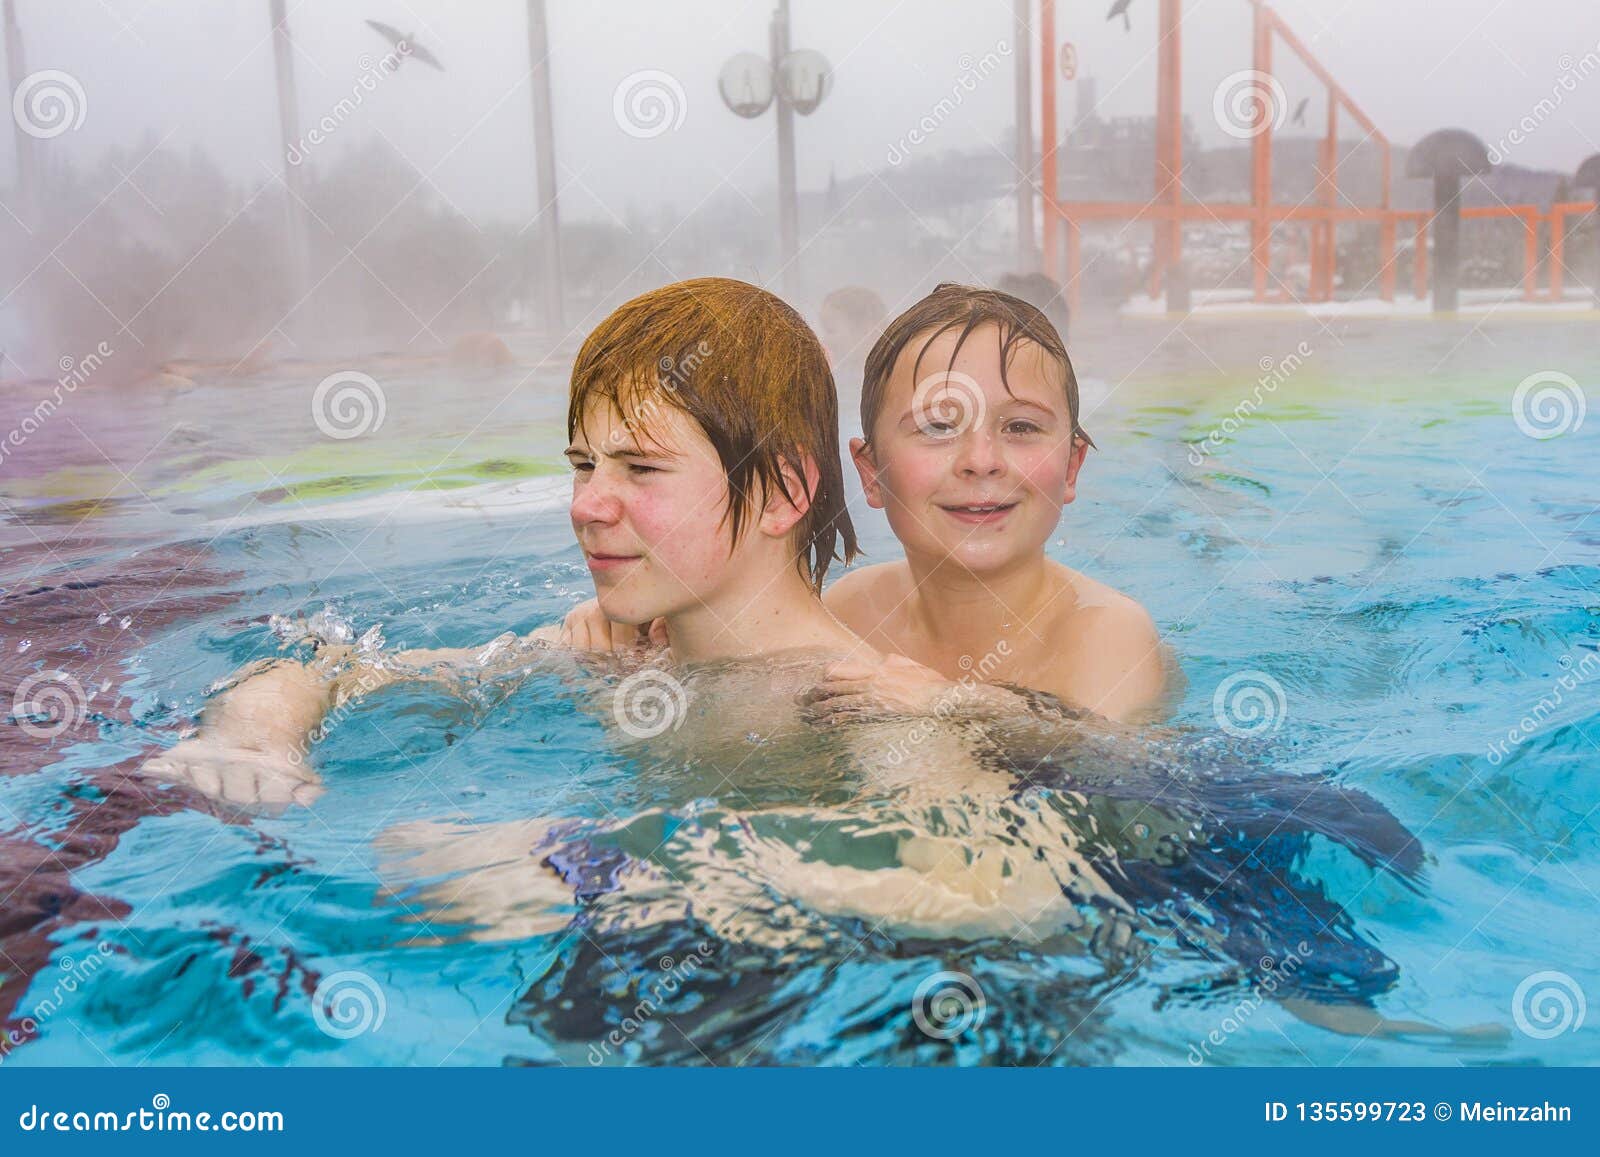 Купание в горячей воде. Братья купаются в бассейне. Дети в бассейне зимой. Дети отдыхают в термах. Купаться в термальных бассейнах.